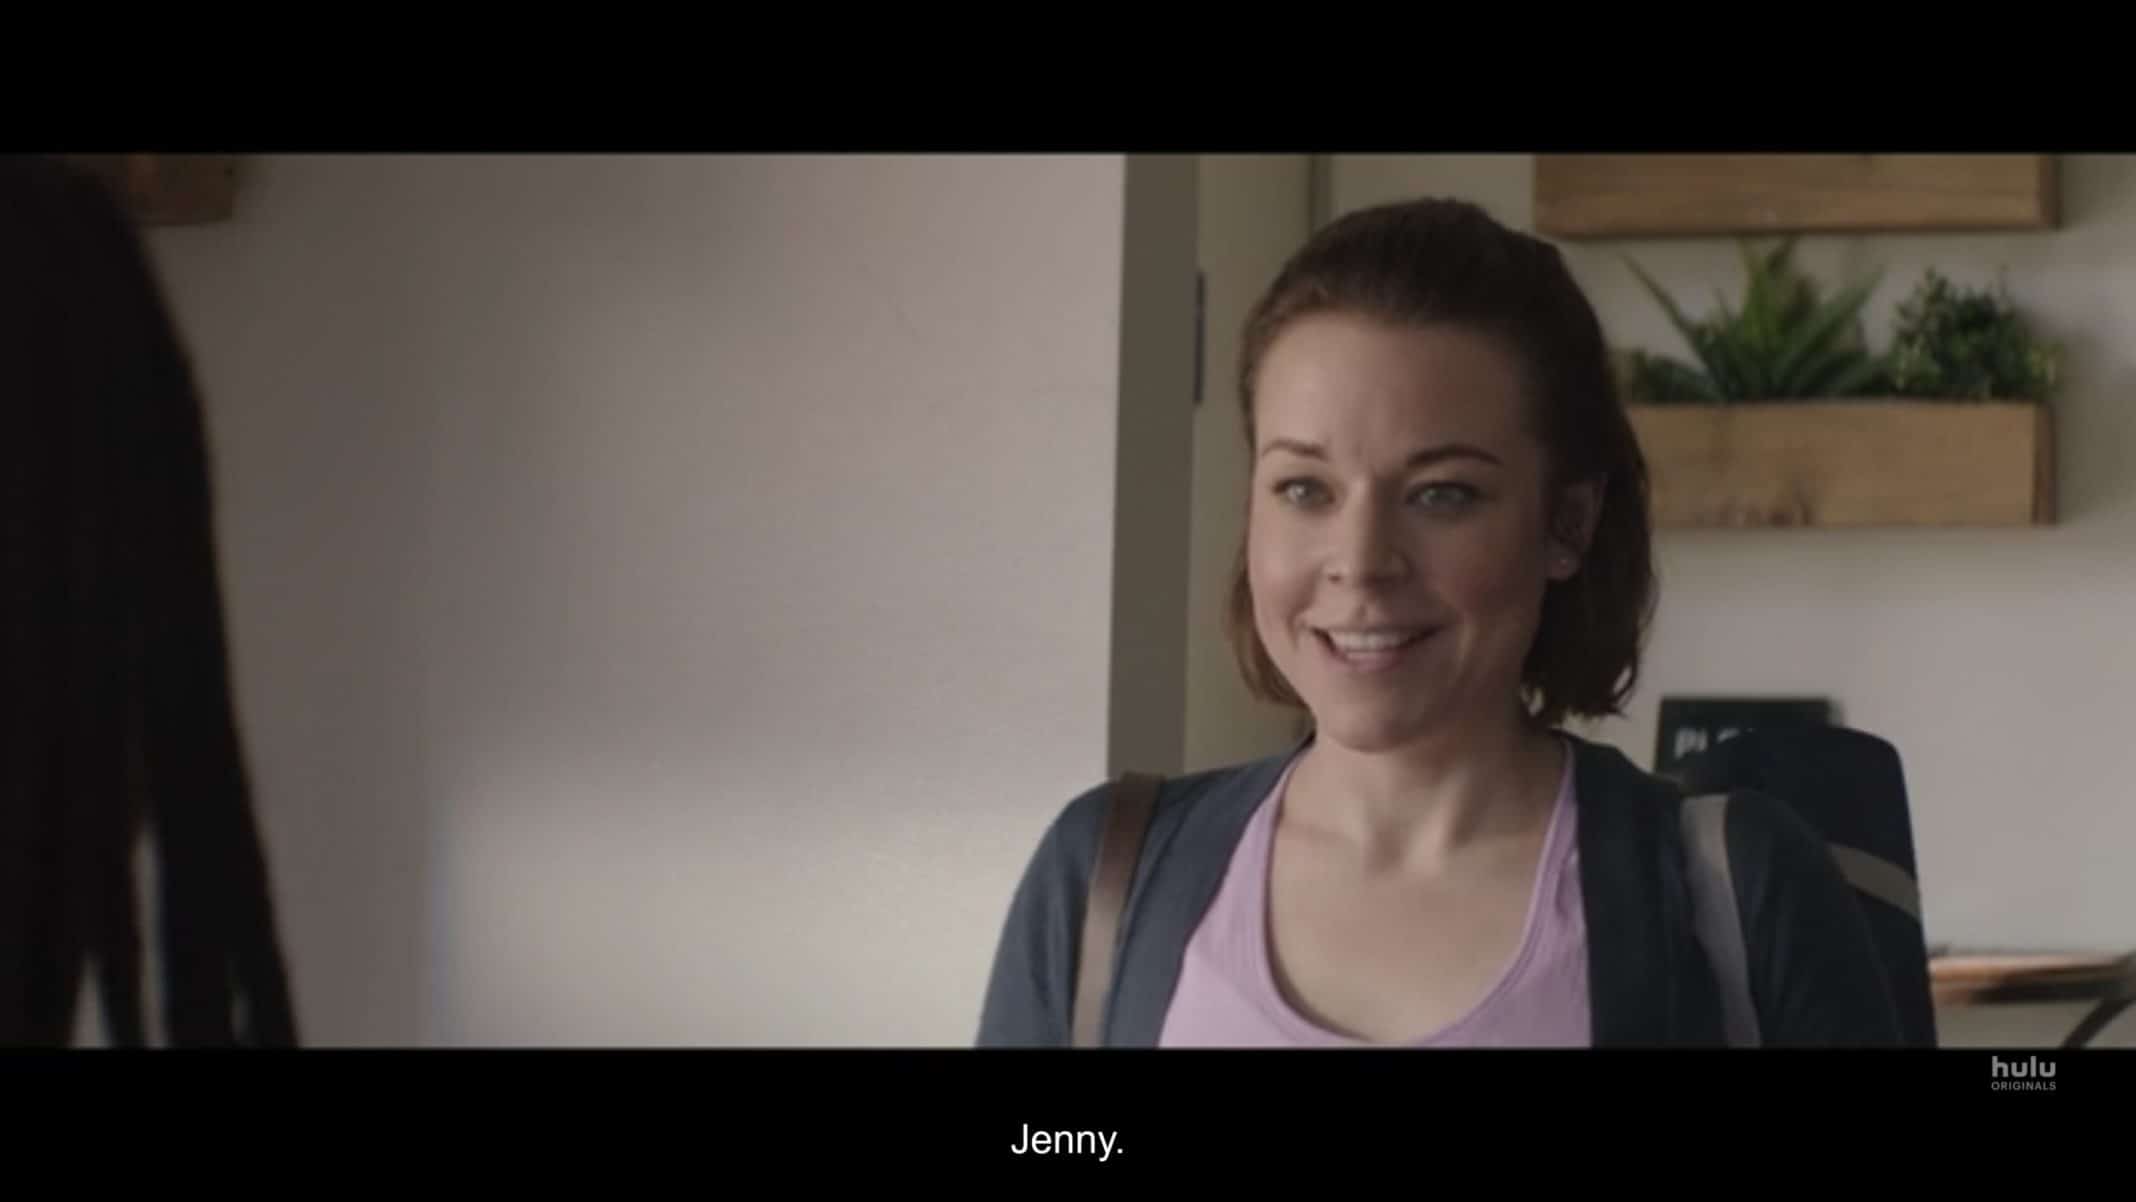 Jenny (Tina Majorino) introducing herself.